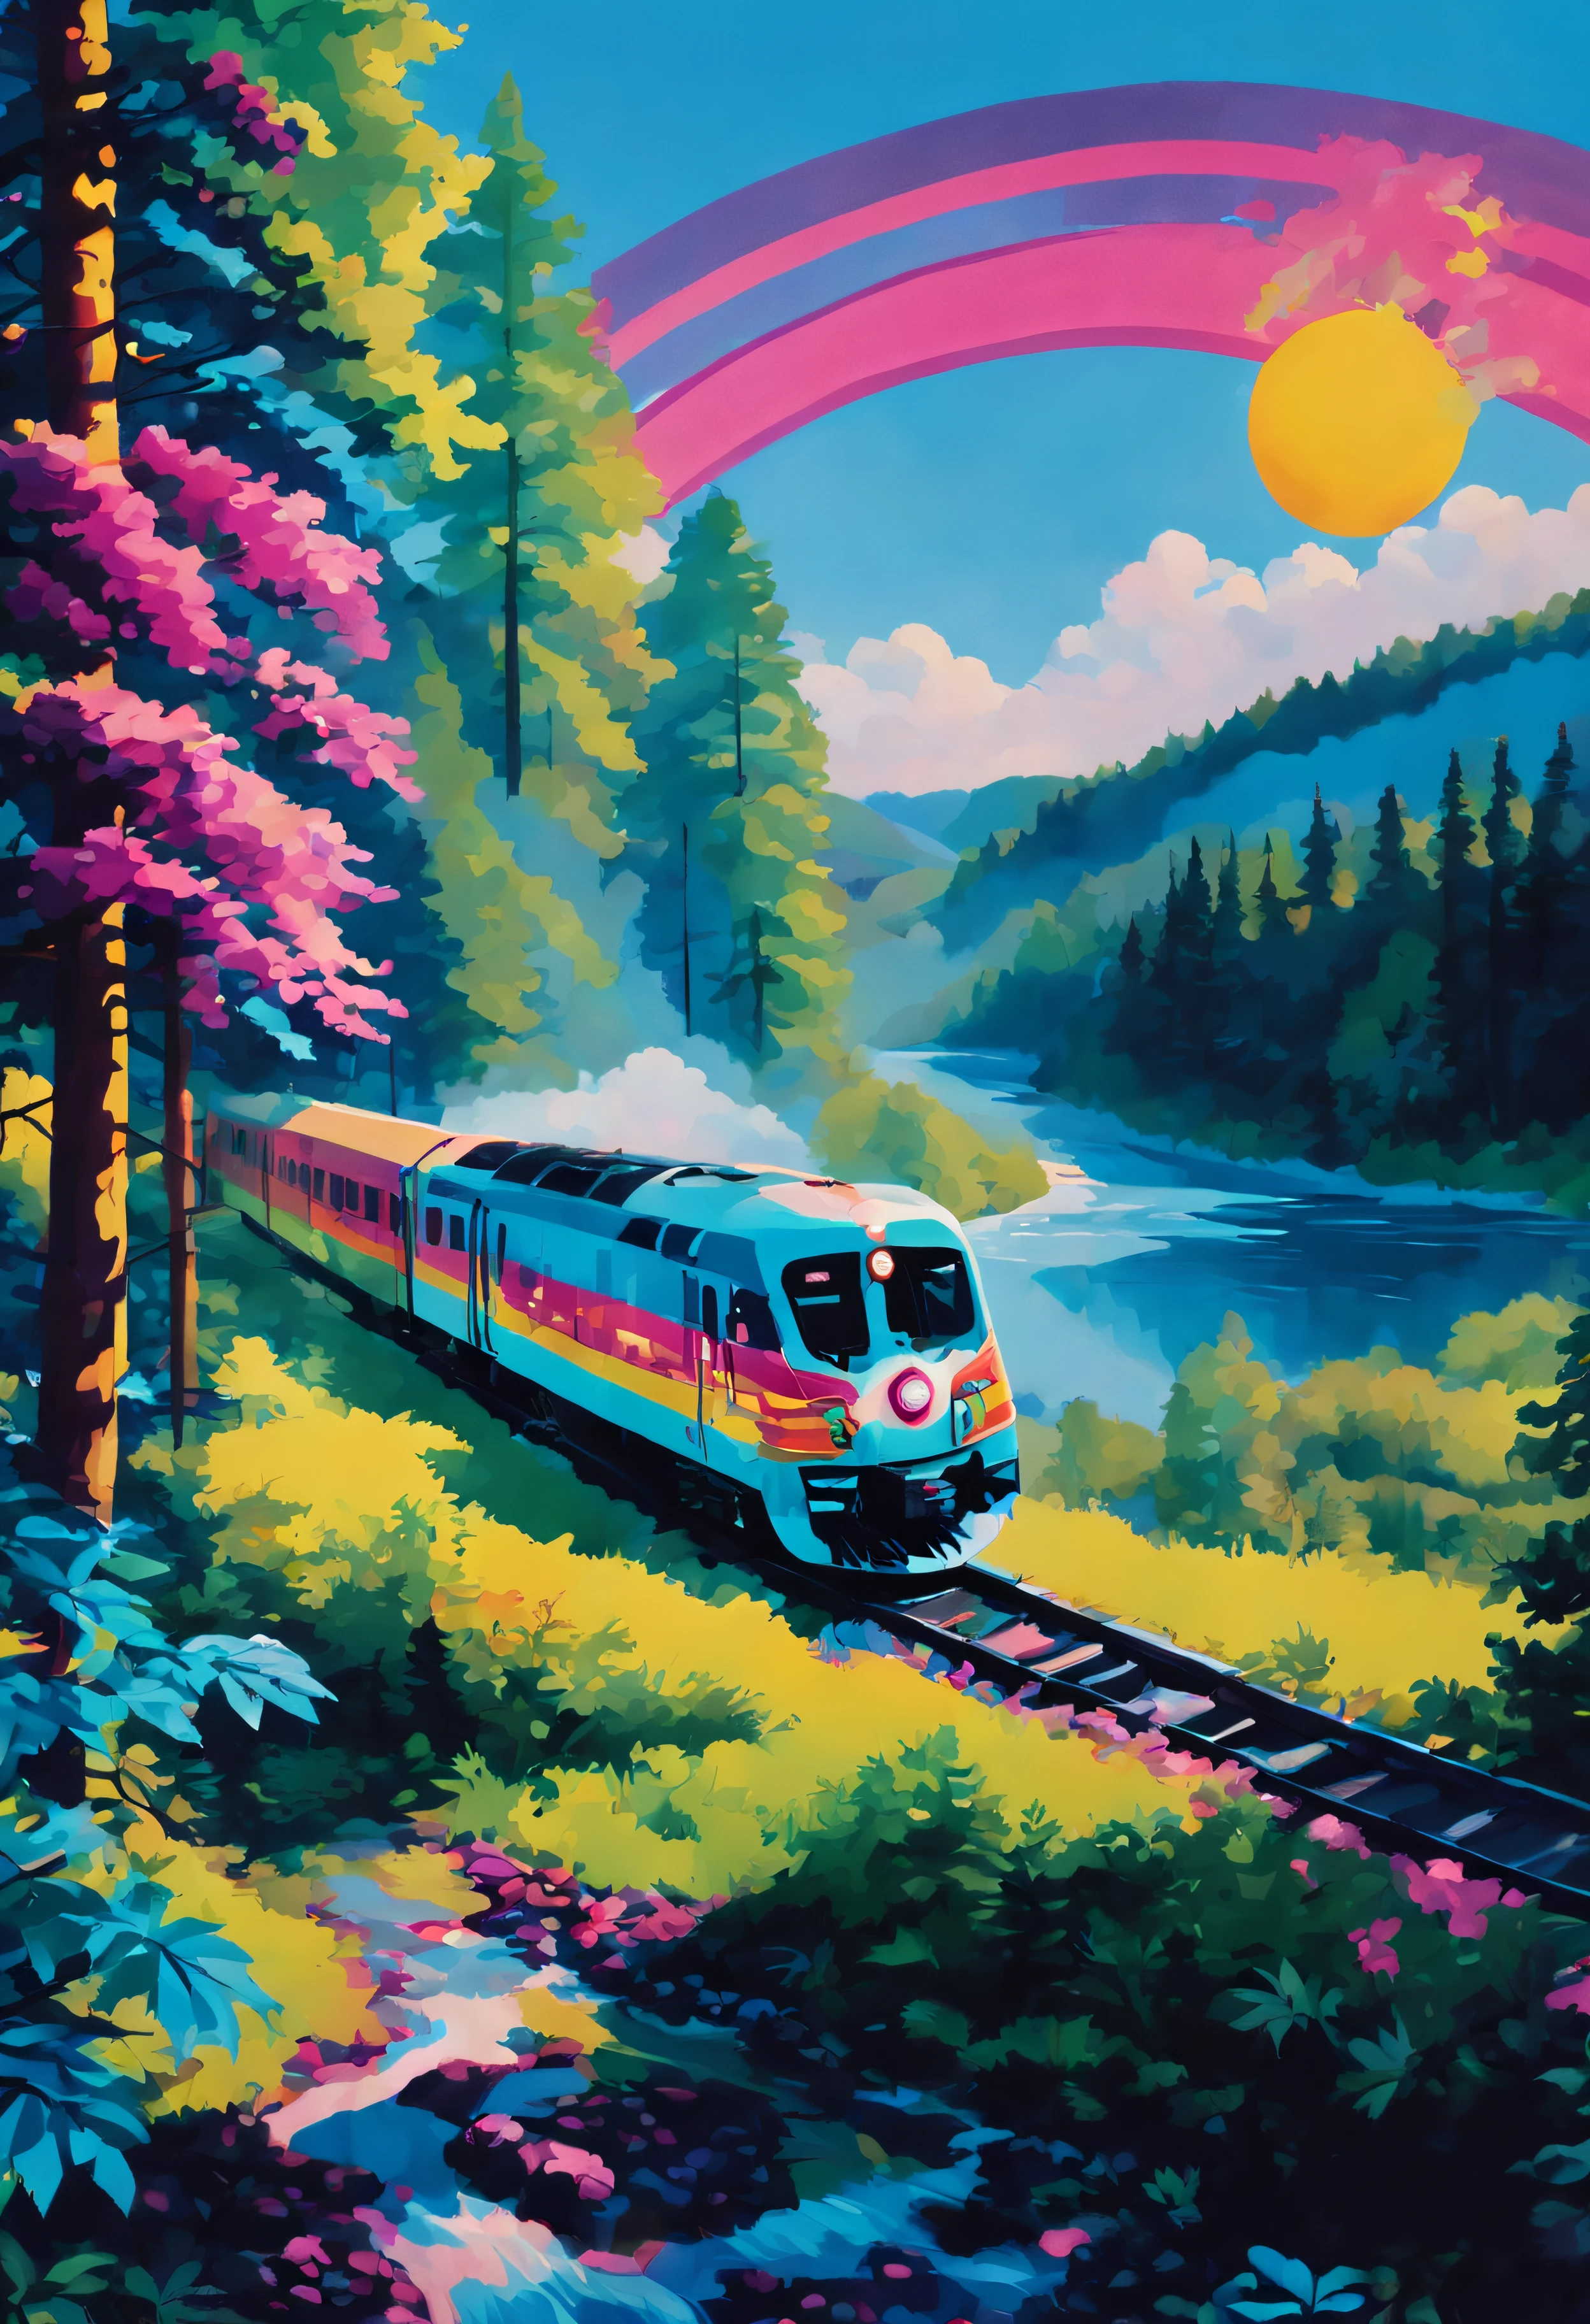 estilo néon, Um trem está se movendo através de uma floresta. O trem é cercado por árvores. O céu está azul e o sol está brilhando. Há um rio ao fundo.